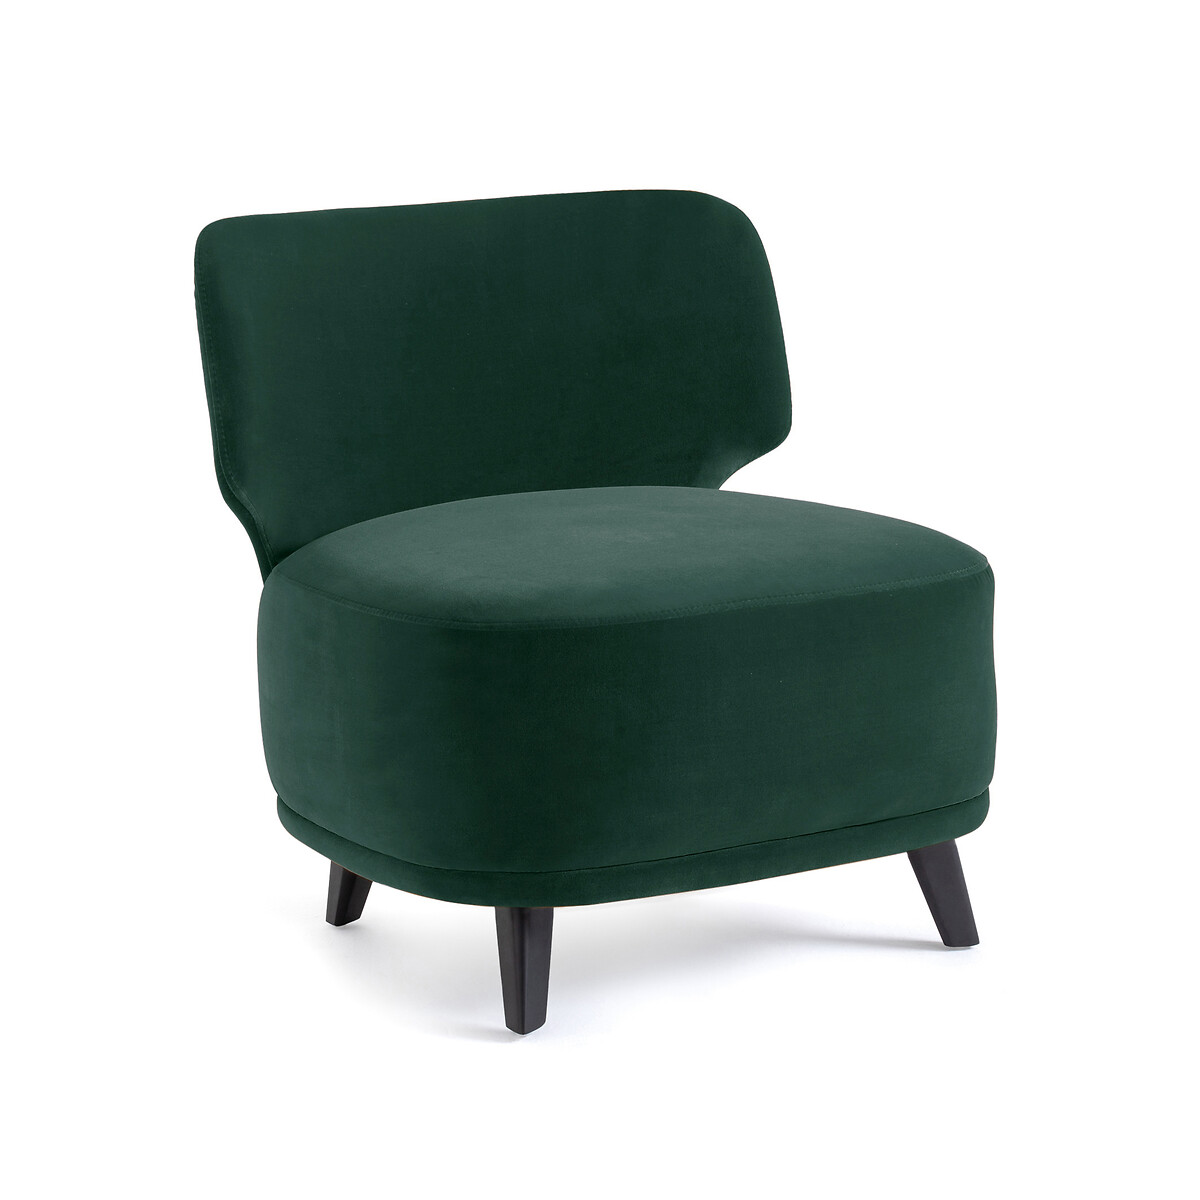 Кресло из велюра Odalie размер XL дизайн Э Галлины единый размер зеленый бра canope малая модель дизайн э галлины единый размер бежевый